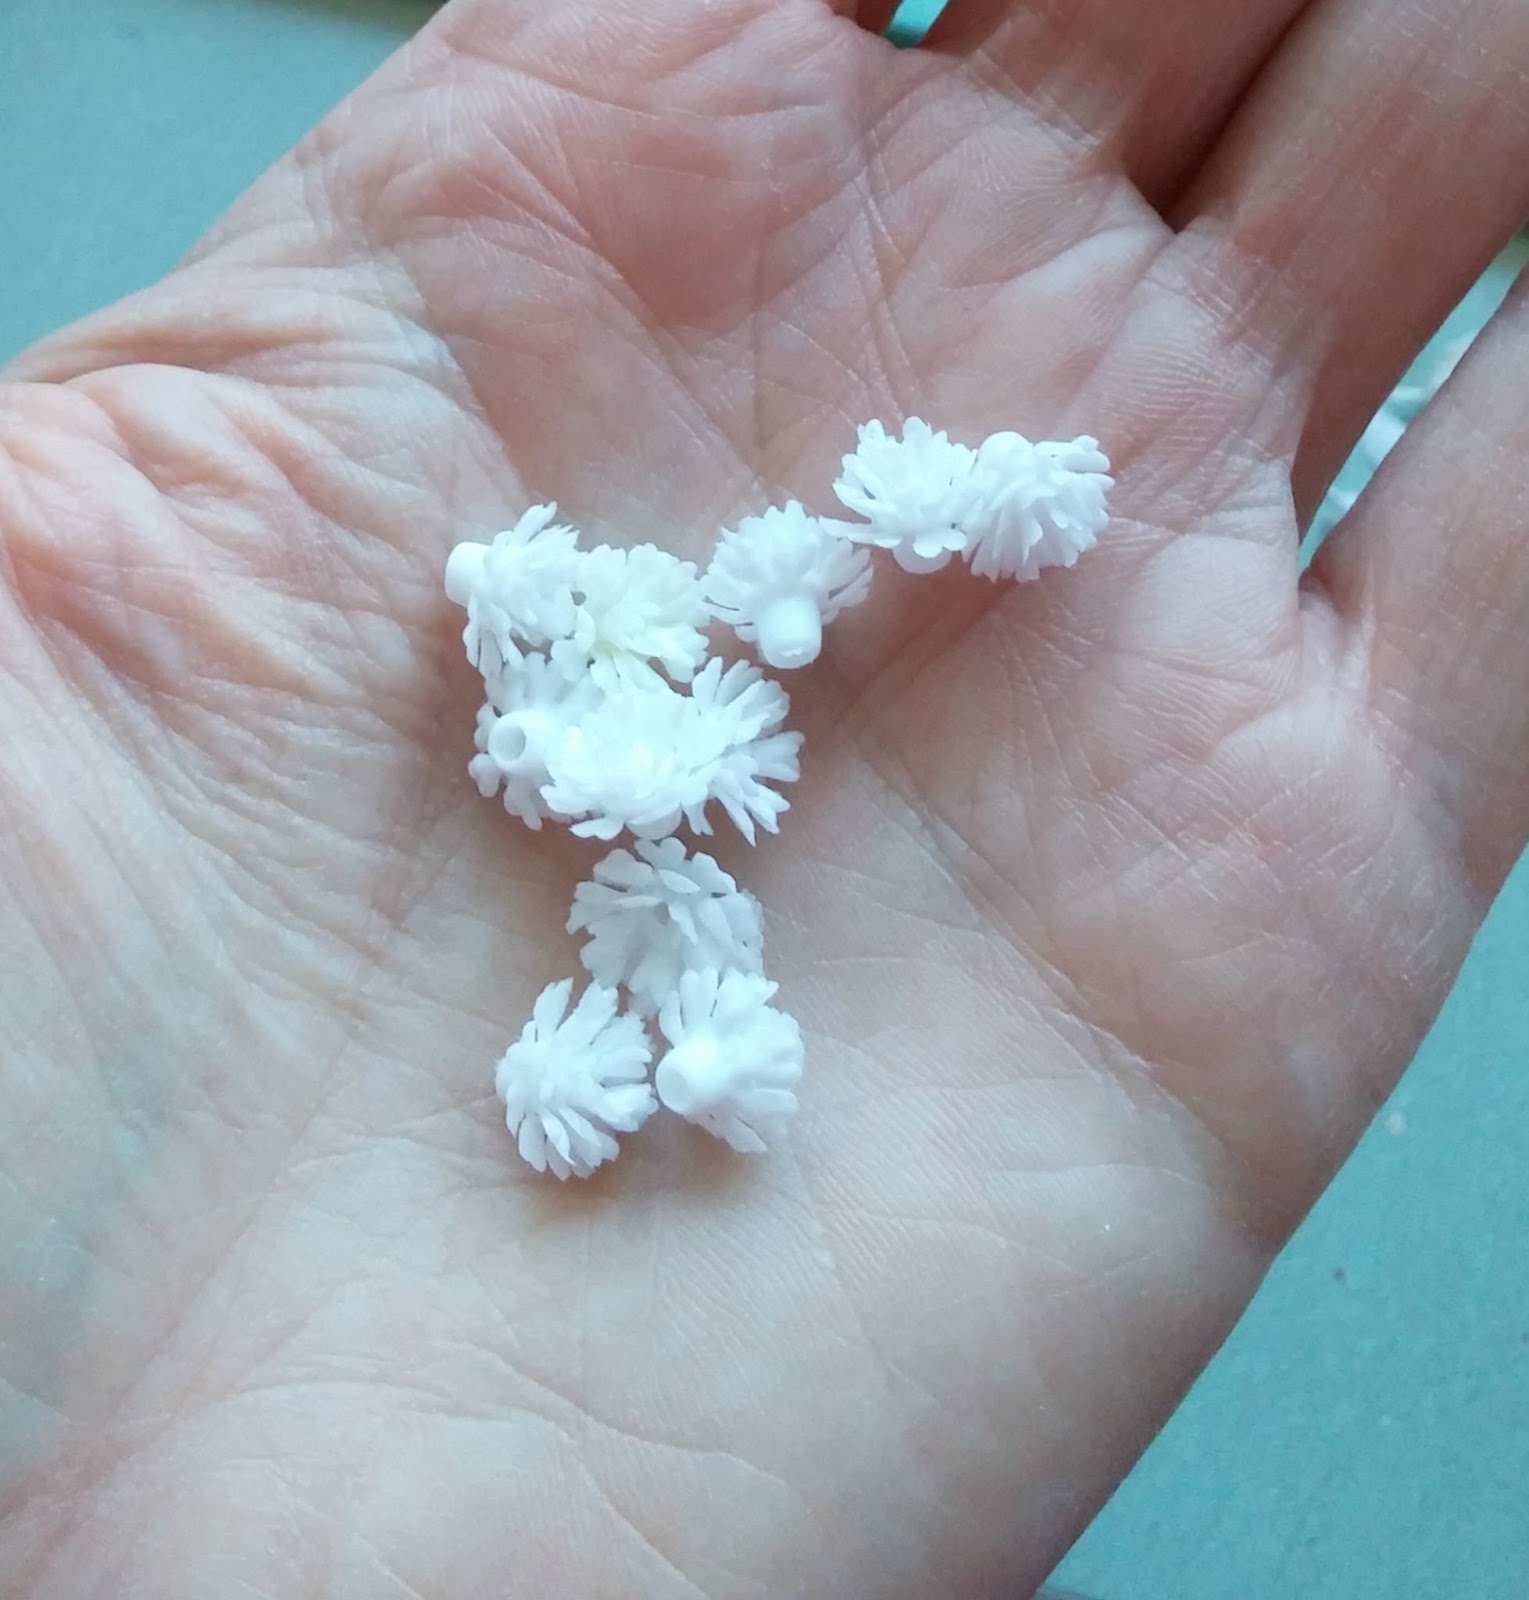 tiny plastic flowers